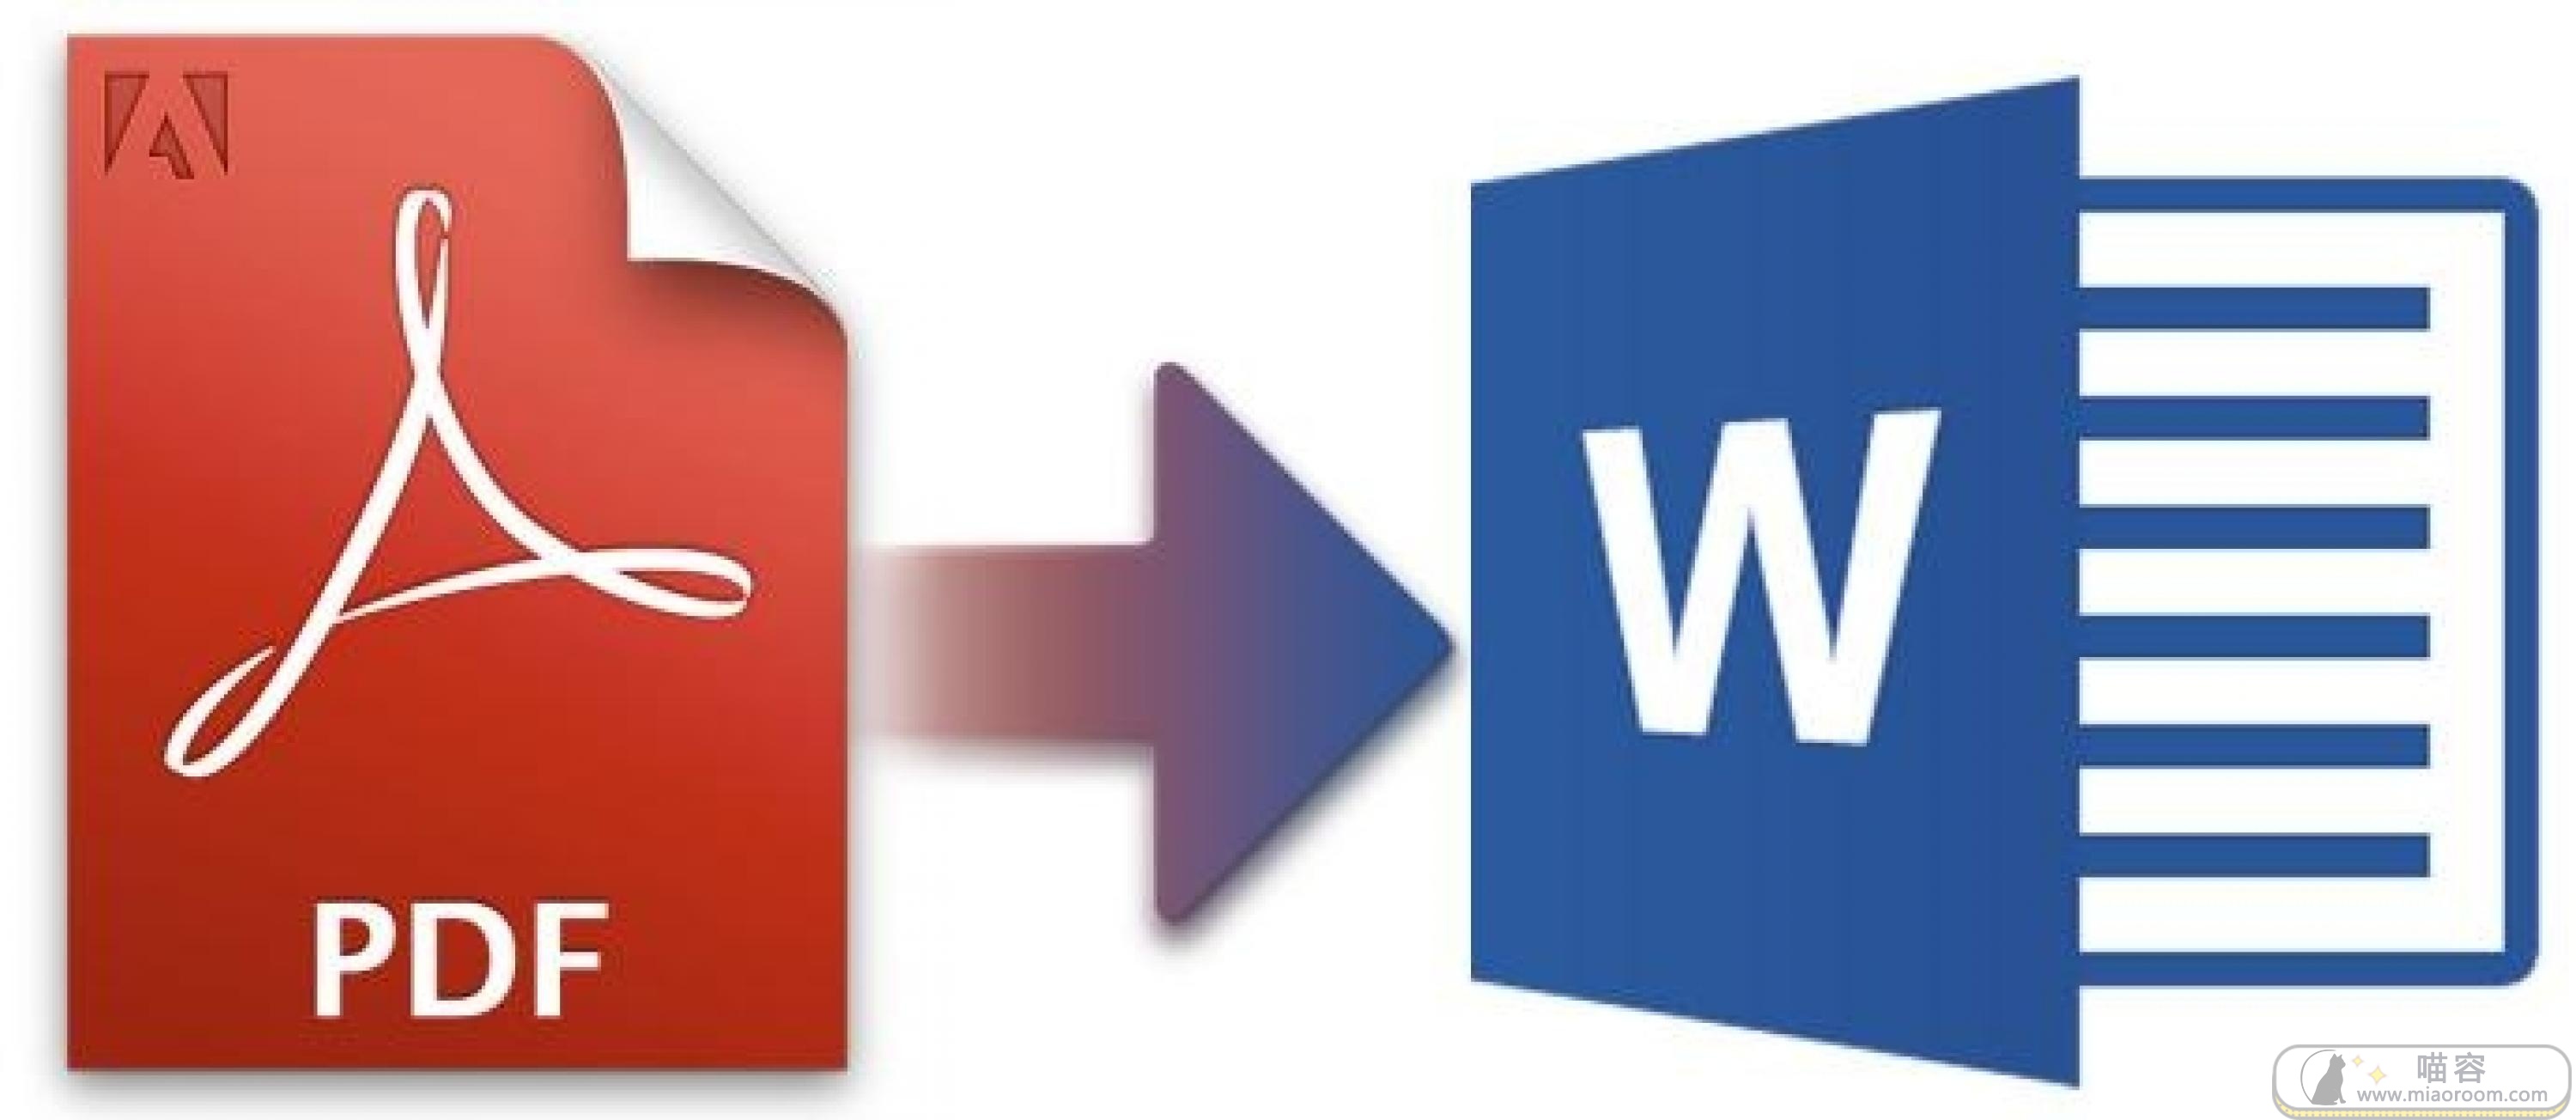 [Windows] 功能强大的 免费PDF转换器 V9版 破解版